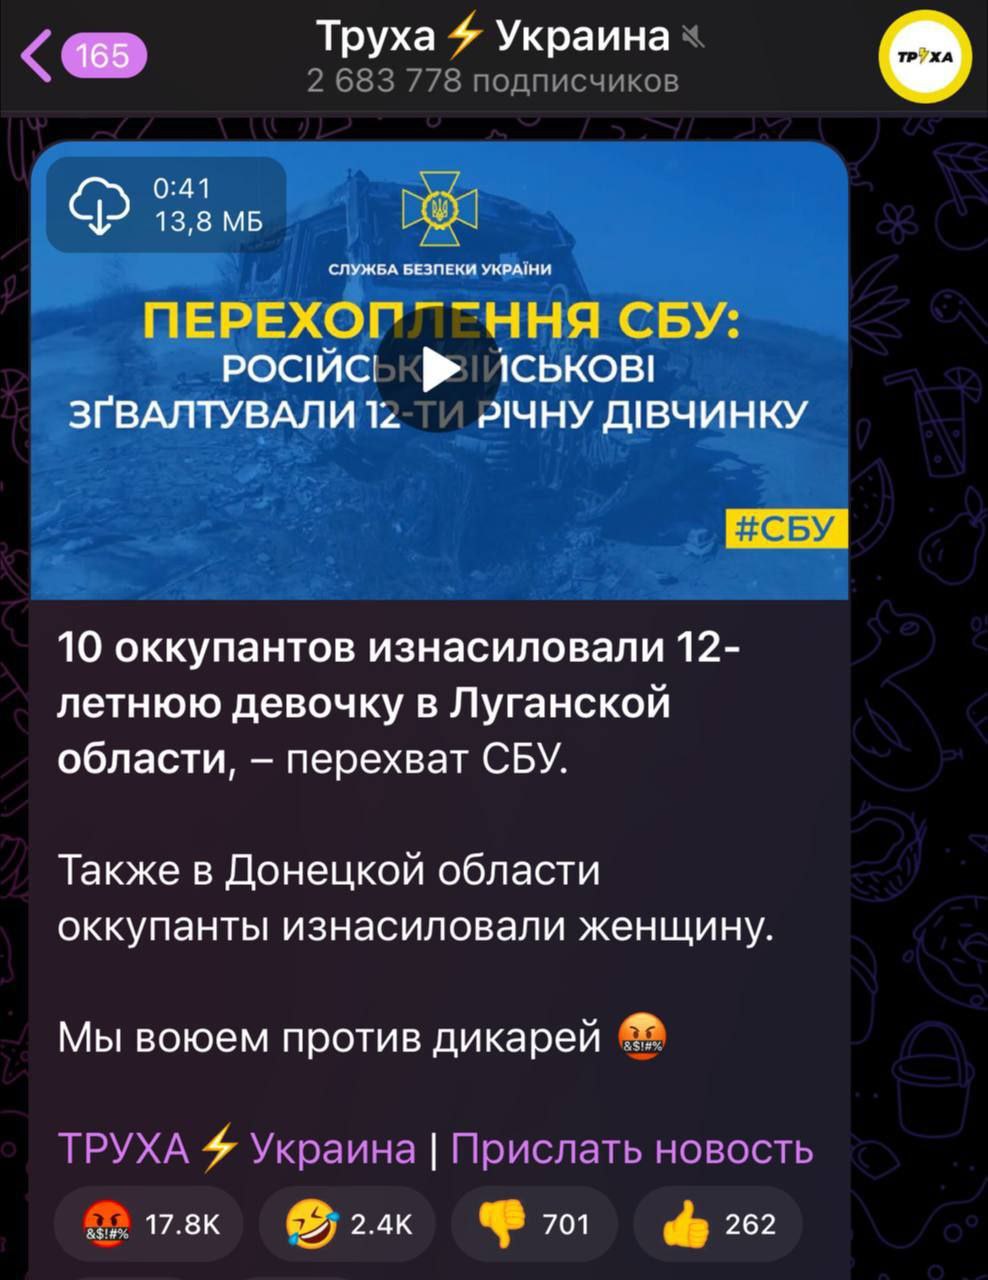 Труха телеграмм украина на русском языке смотреть фото 65